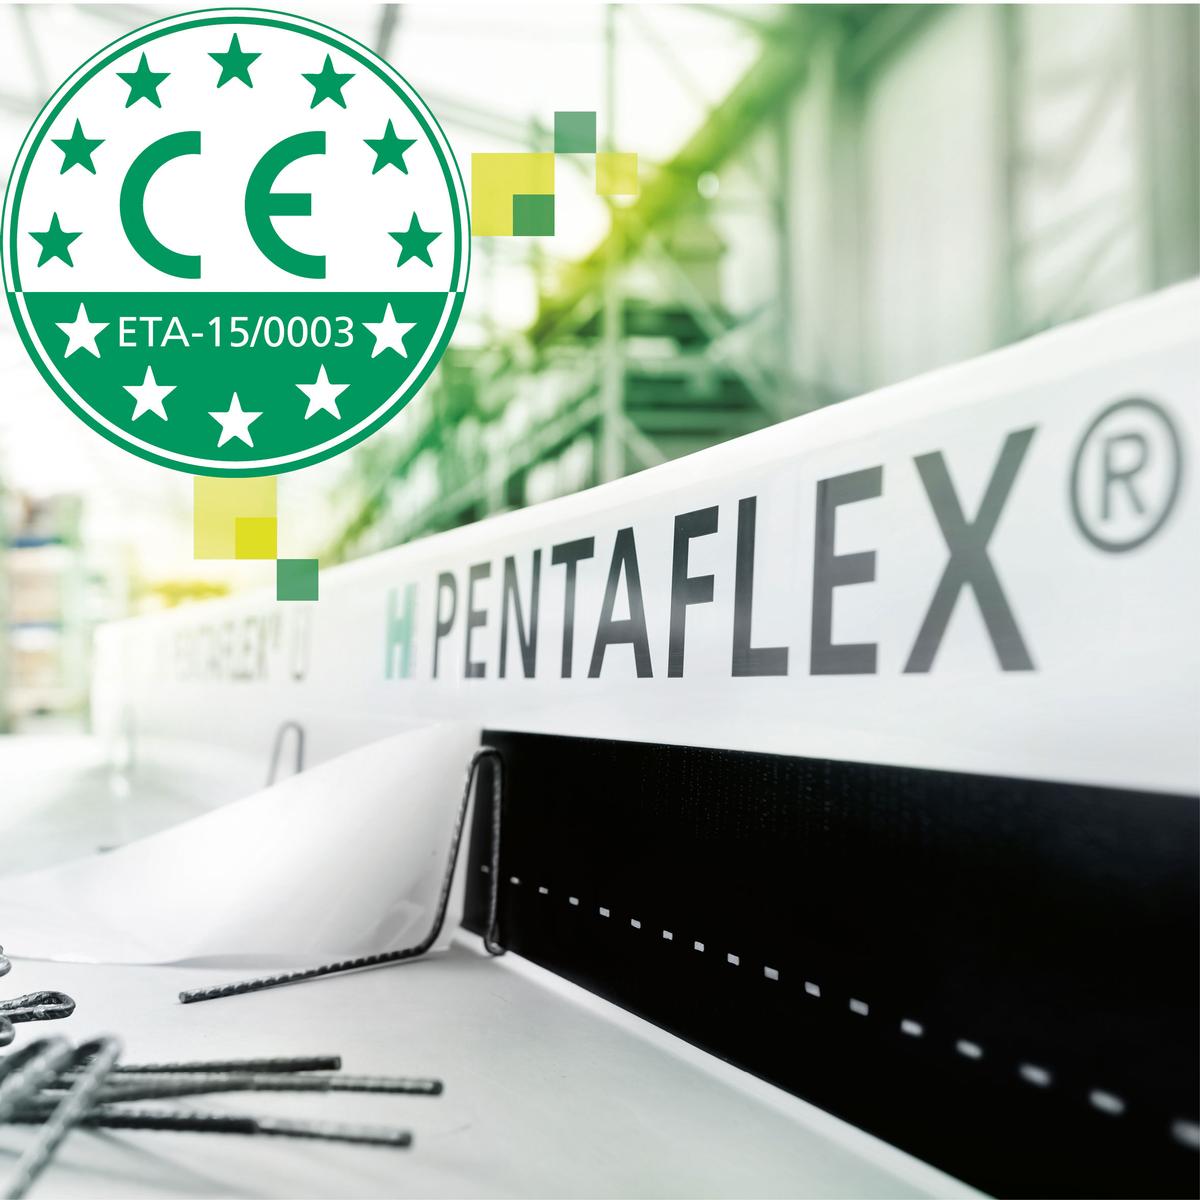 Mediendatei Nr. 250304 Für das PENTAFLEX® Abdichtungssystem wurde kürzlich eine ETA durch das DIBt erteilt. Die damit einhergehende CE-Kennzeichnung bietet für Planer und Verarbeiter eine vereinfachte Ausschreibung und zugleich Rechtssicherheit vor allem bei internationalen Bauprojekten.